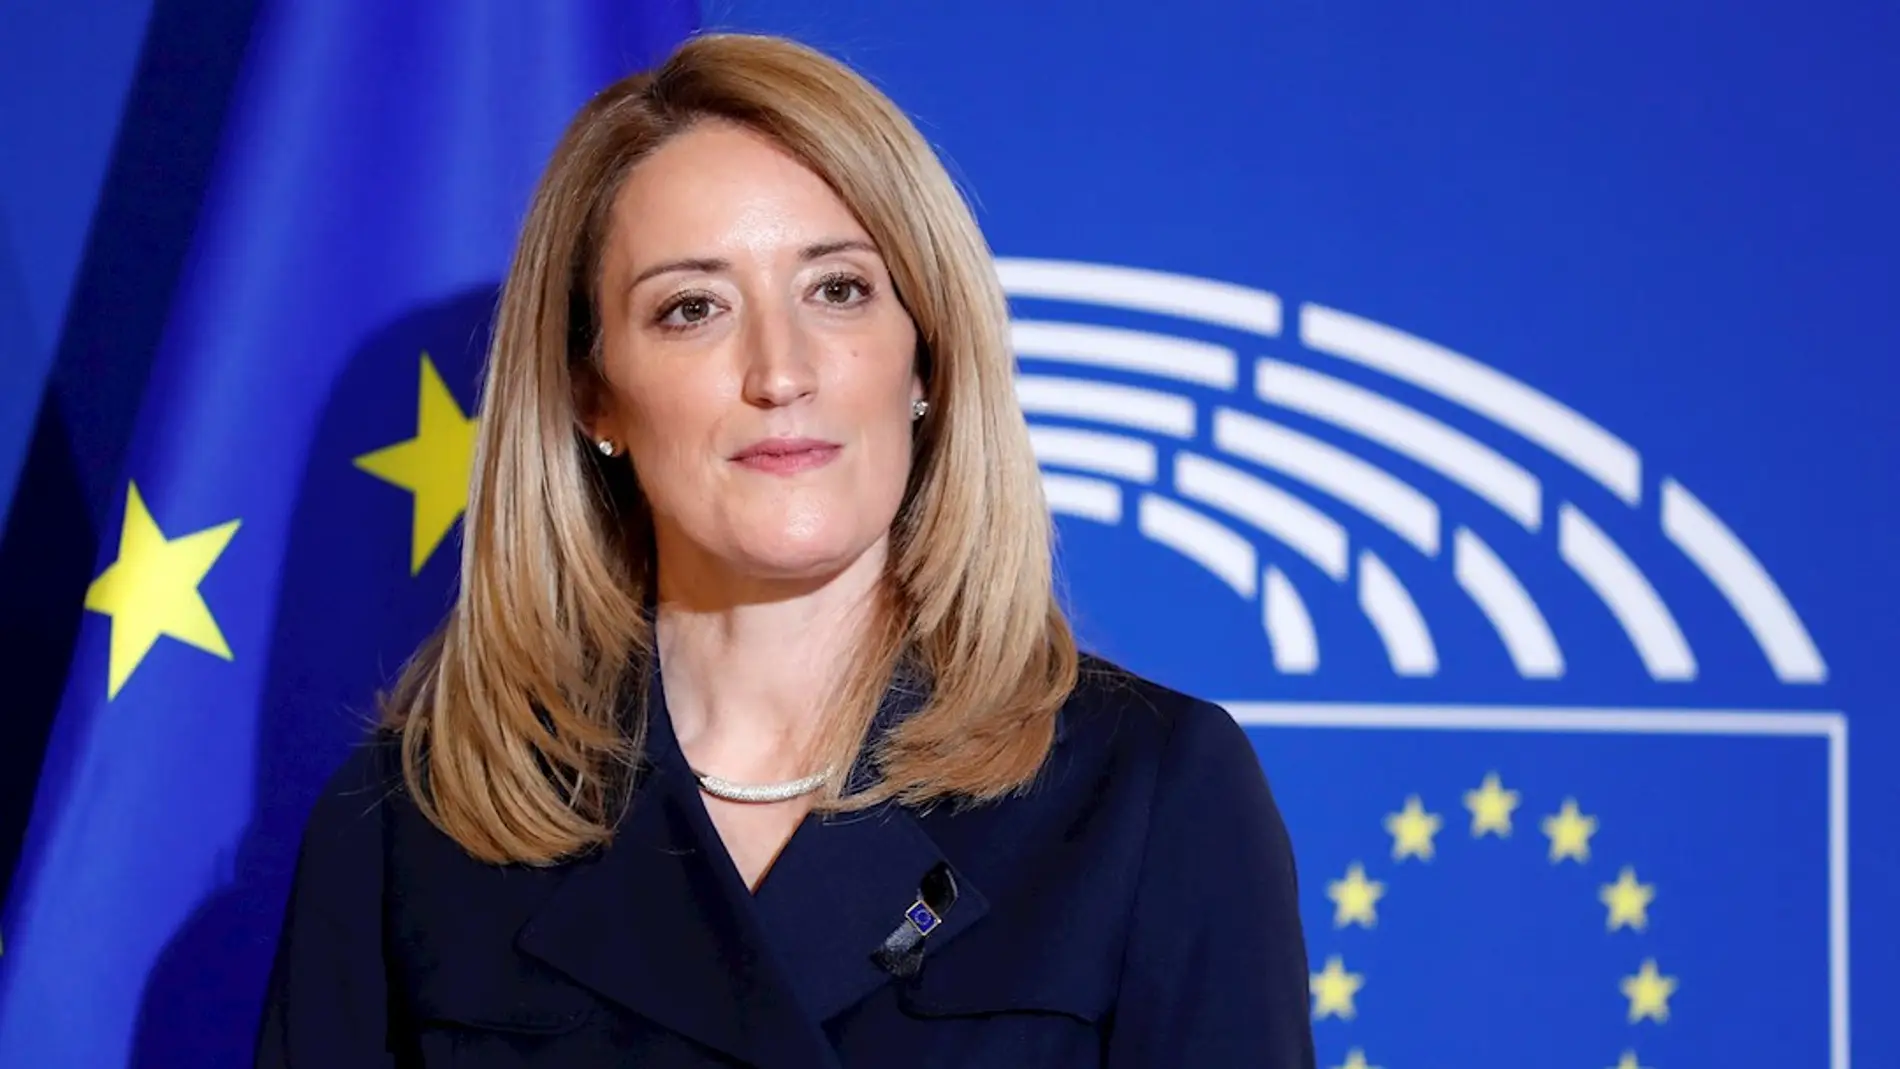 El Parlamento Europeo elige hoy a su nueva presidenta Roberta Metsola |  Onda Cero Radio